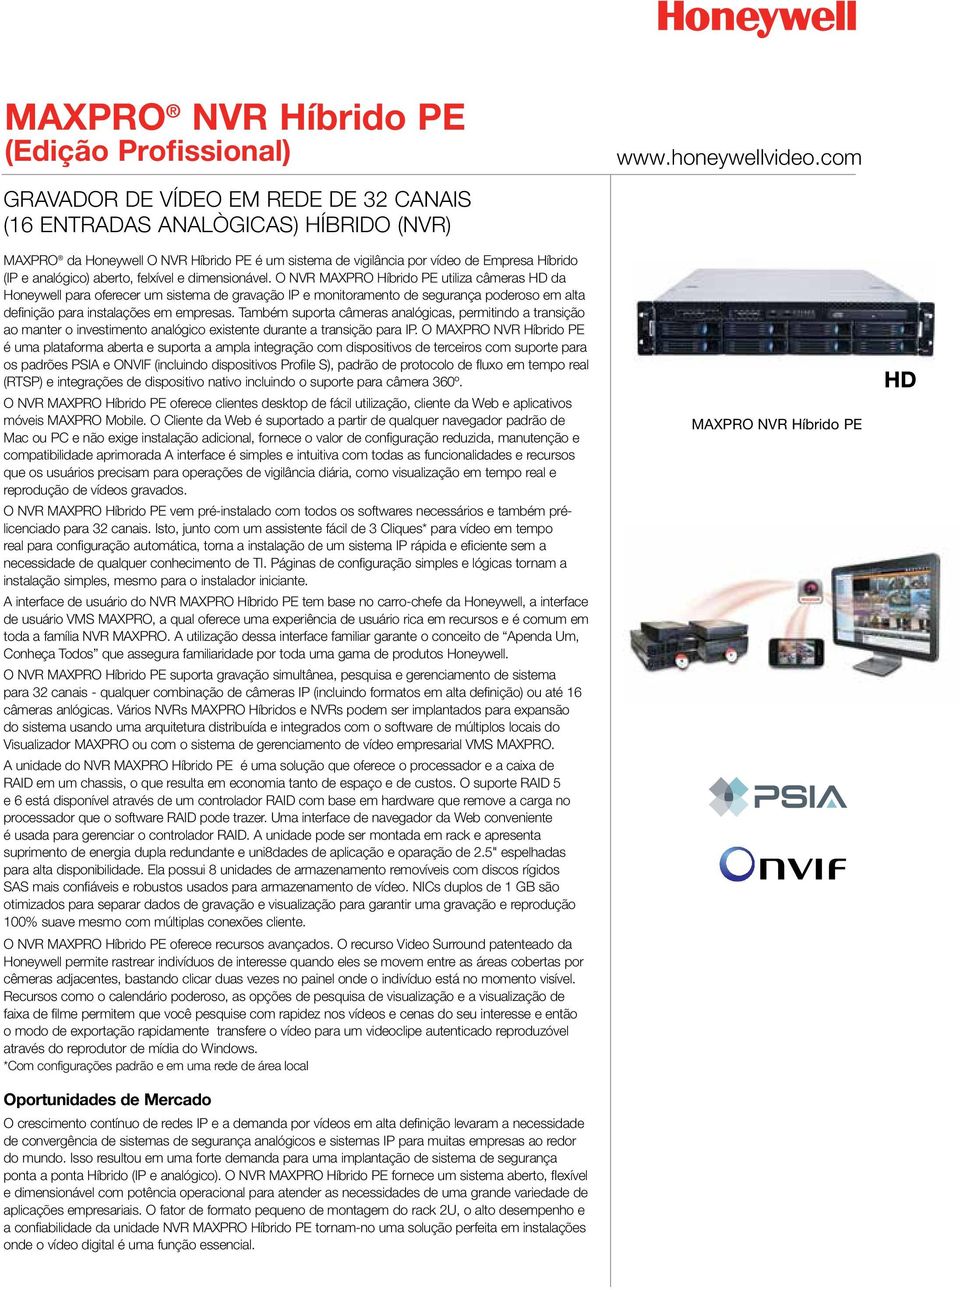 O NVR MAXPRO Híbrido PE utiliza câmeras HD da Honeywell para oferecer um sistema de gravação IP e monitoramento de segurança poderoso em alta definição para instalações em empresas.